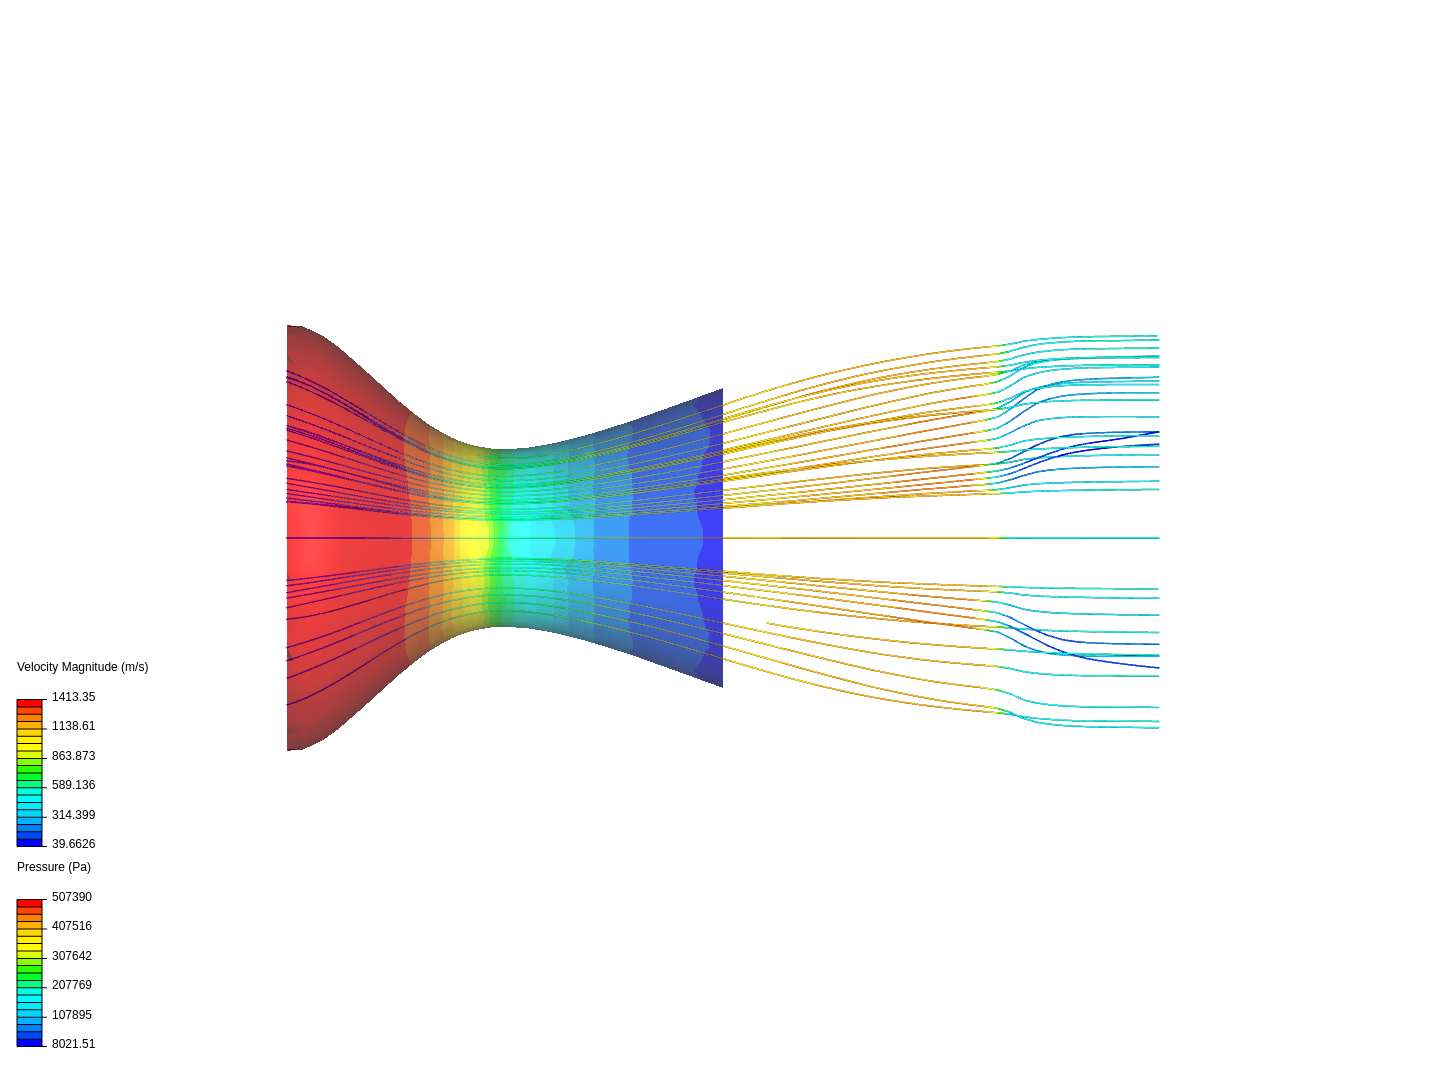 Normal Shock Wave Simulation image